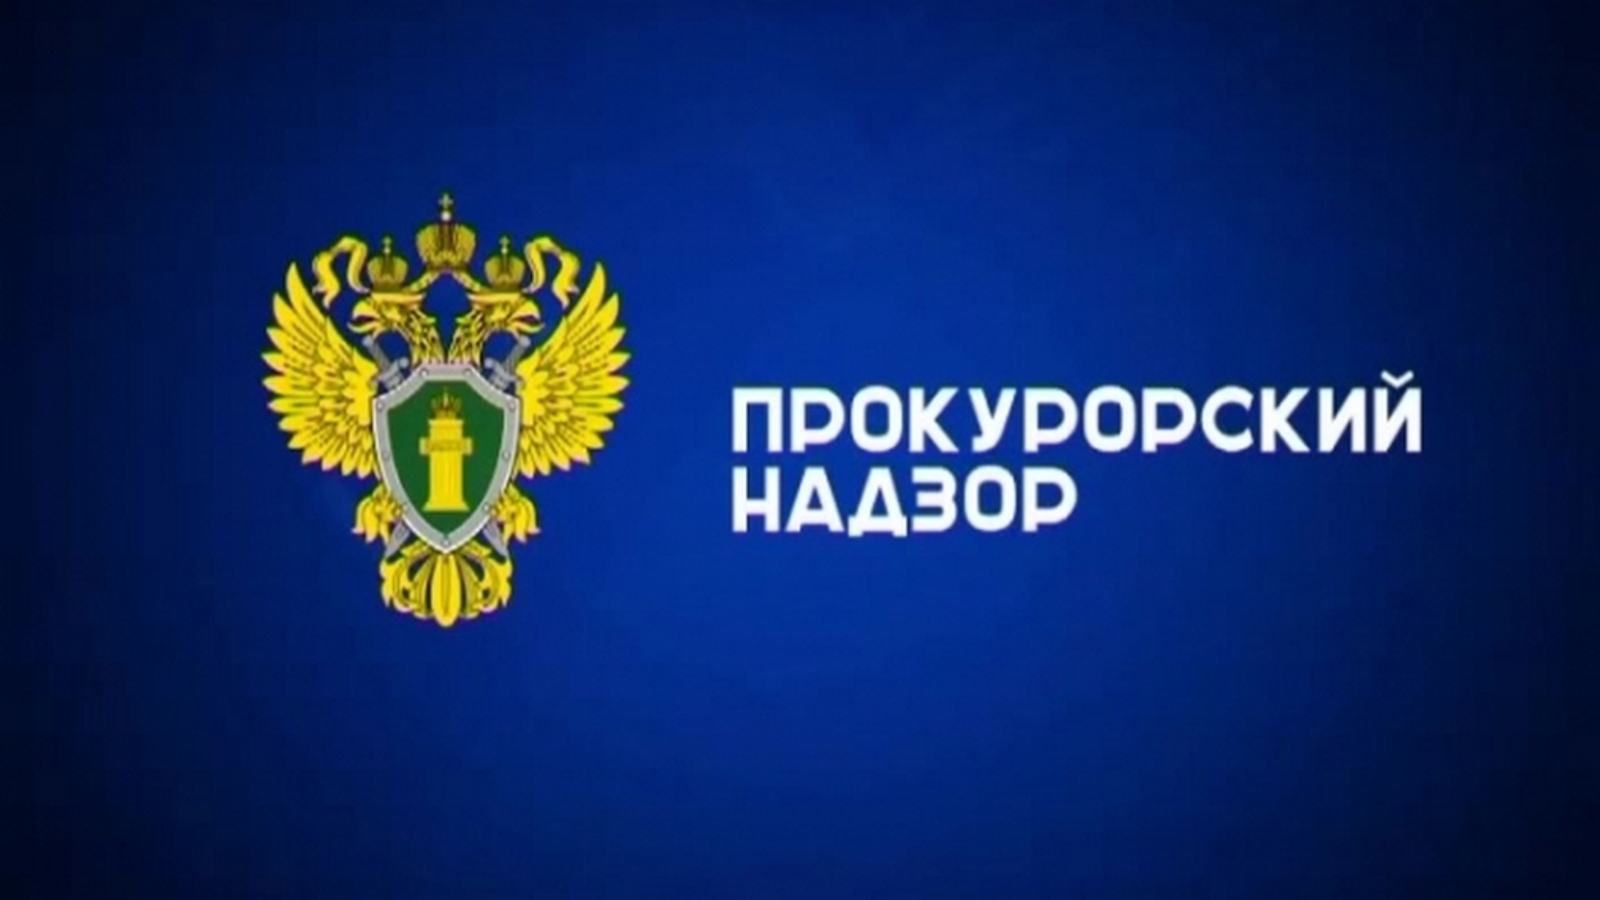 Результаты осуществления прокуратурой Грязовецкого района надзора за исполнением законодательства о налогах.